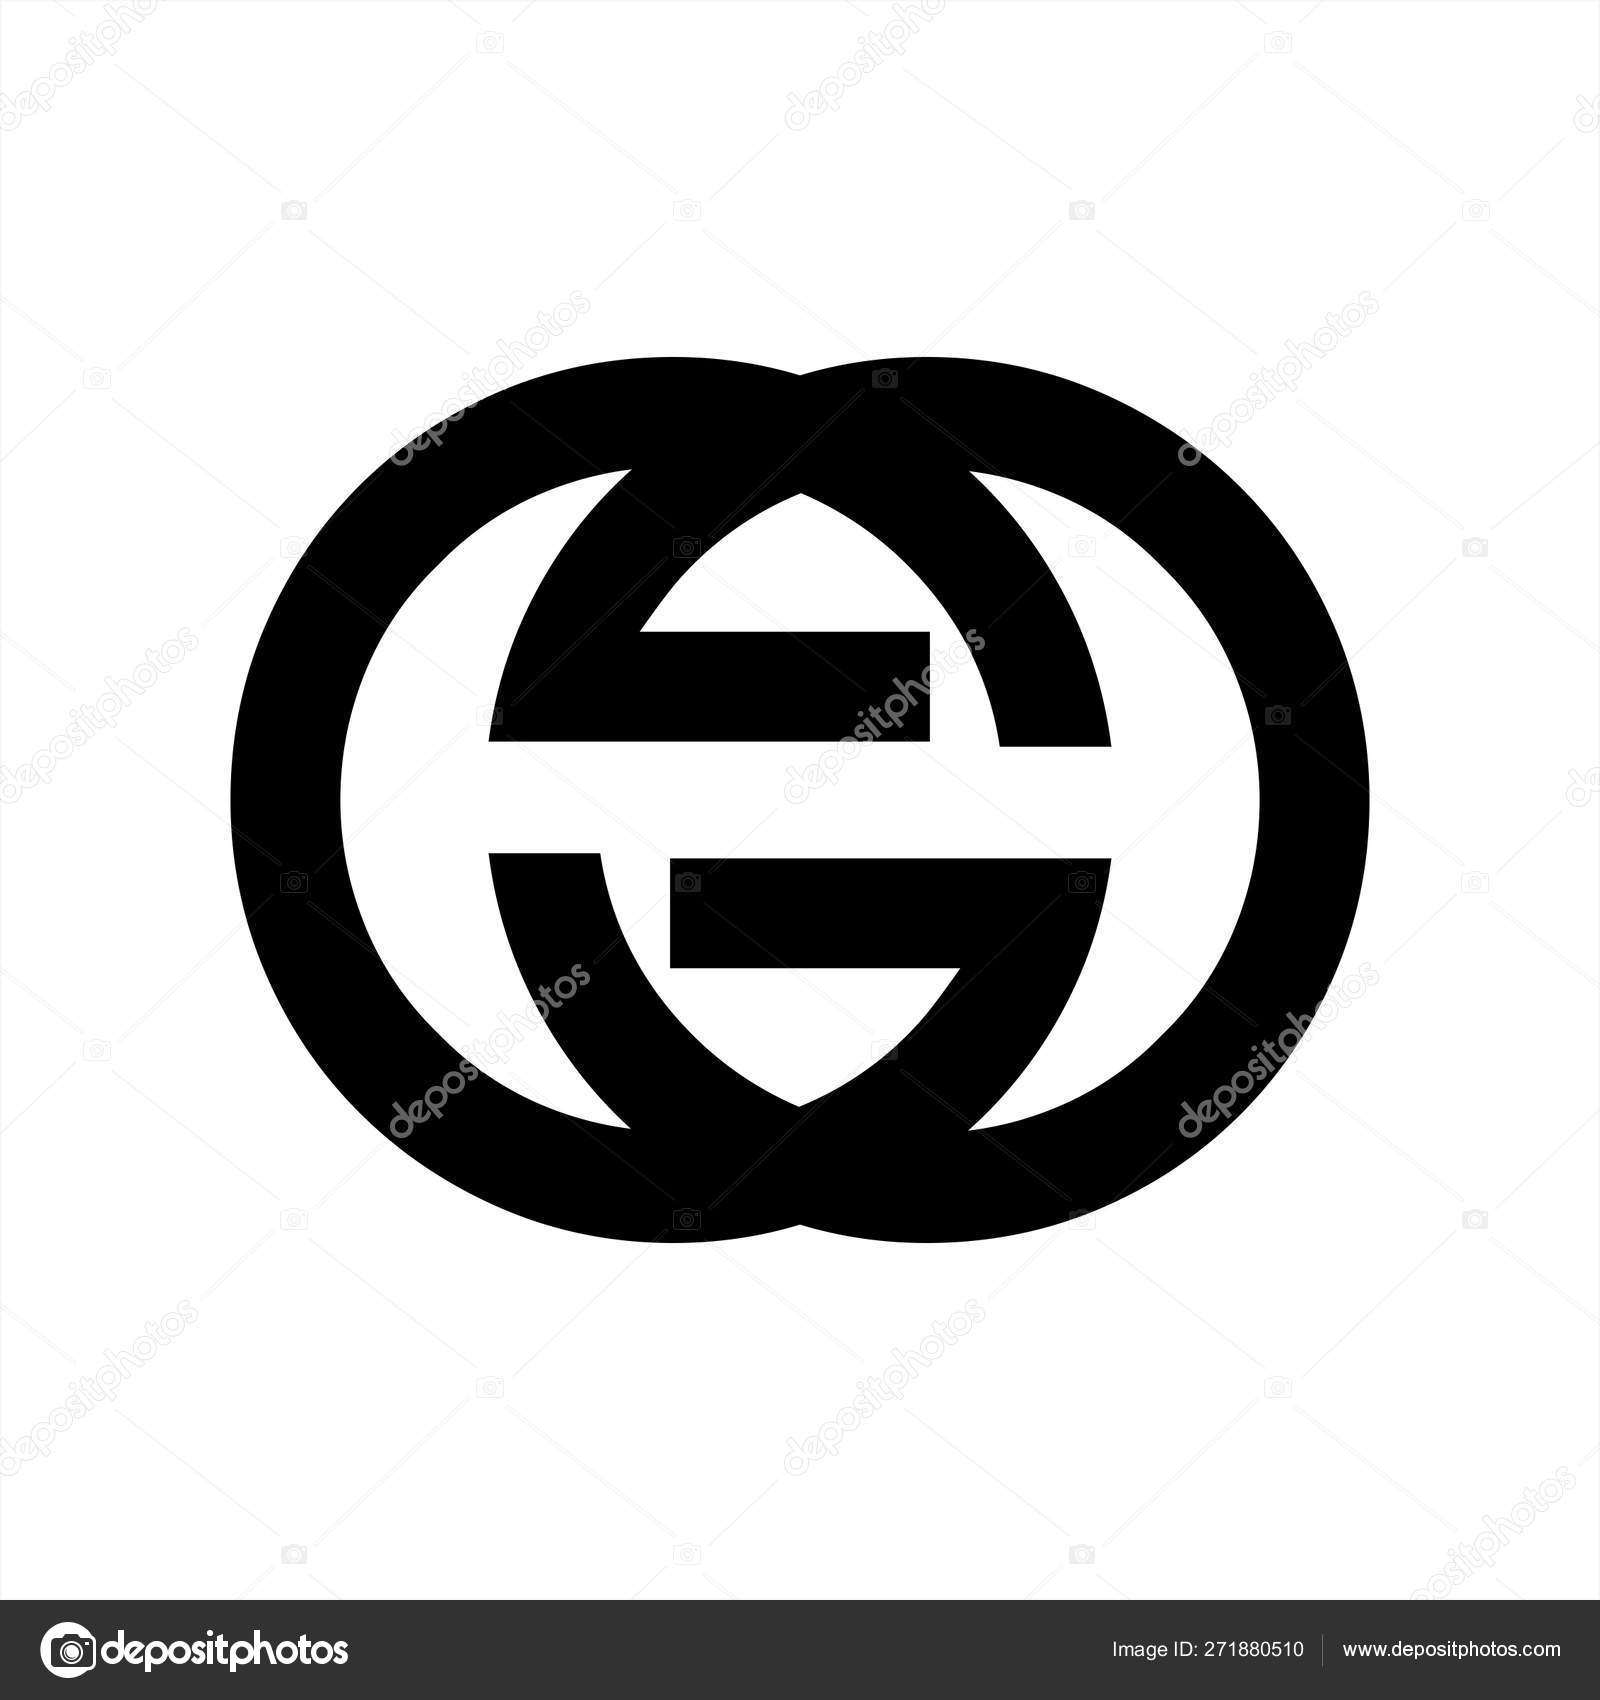 gg emblem